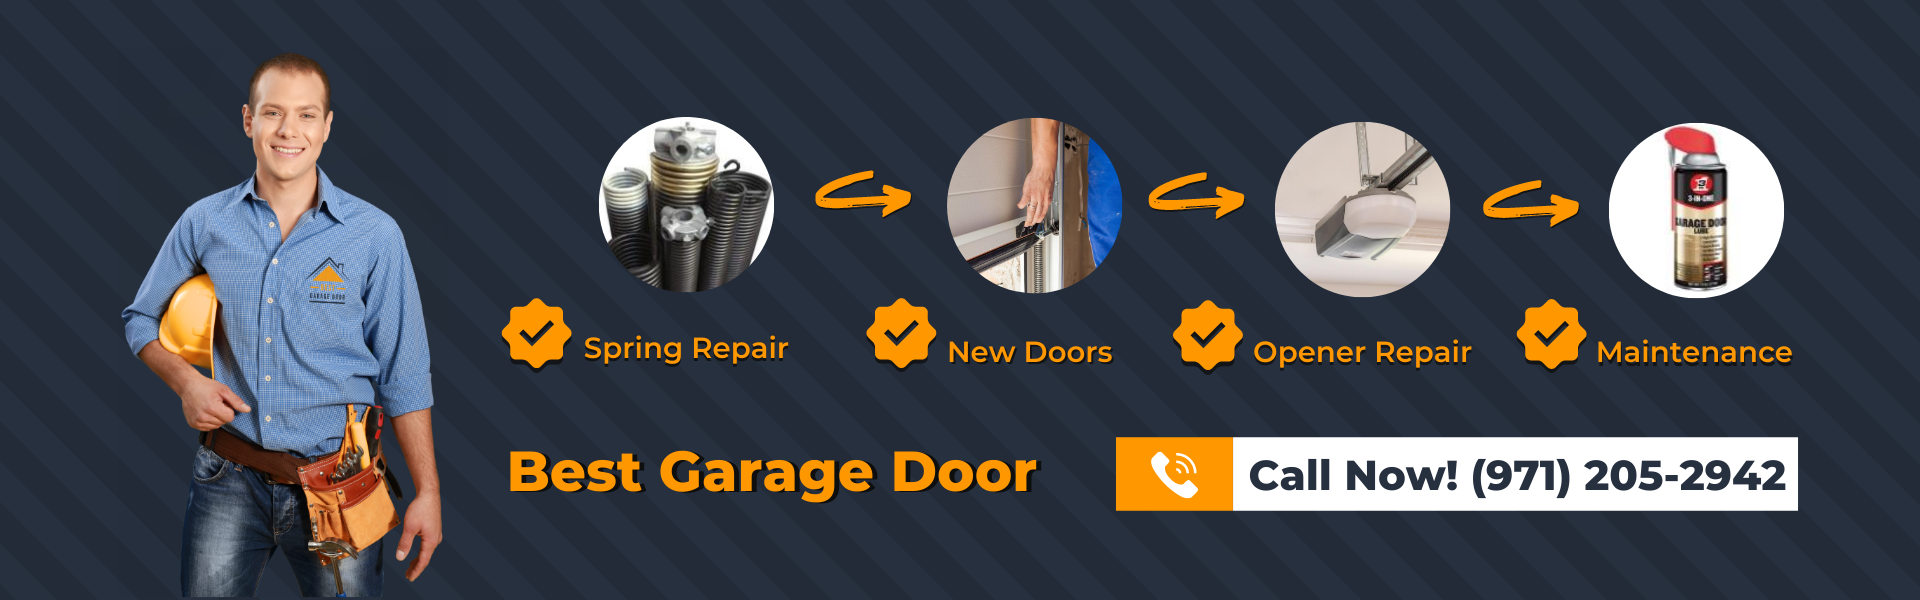 Best Garage Door Services & Repiar OR